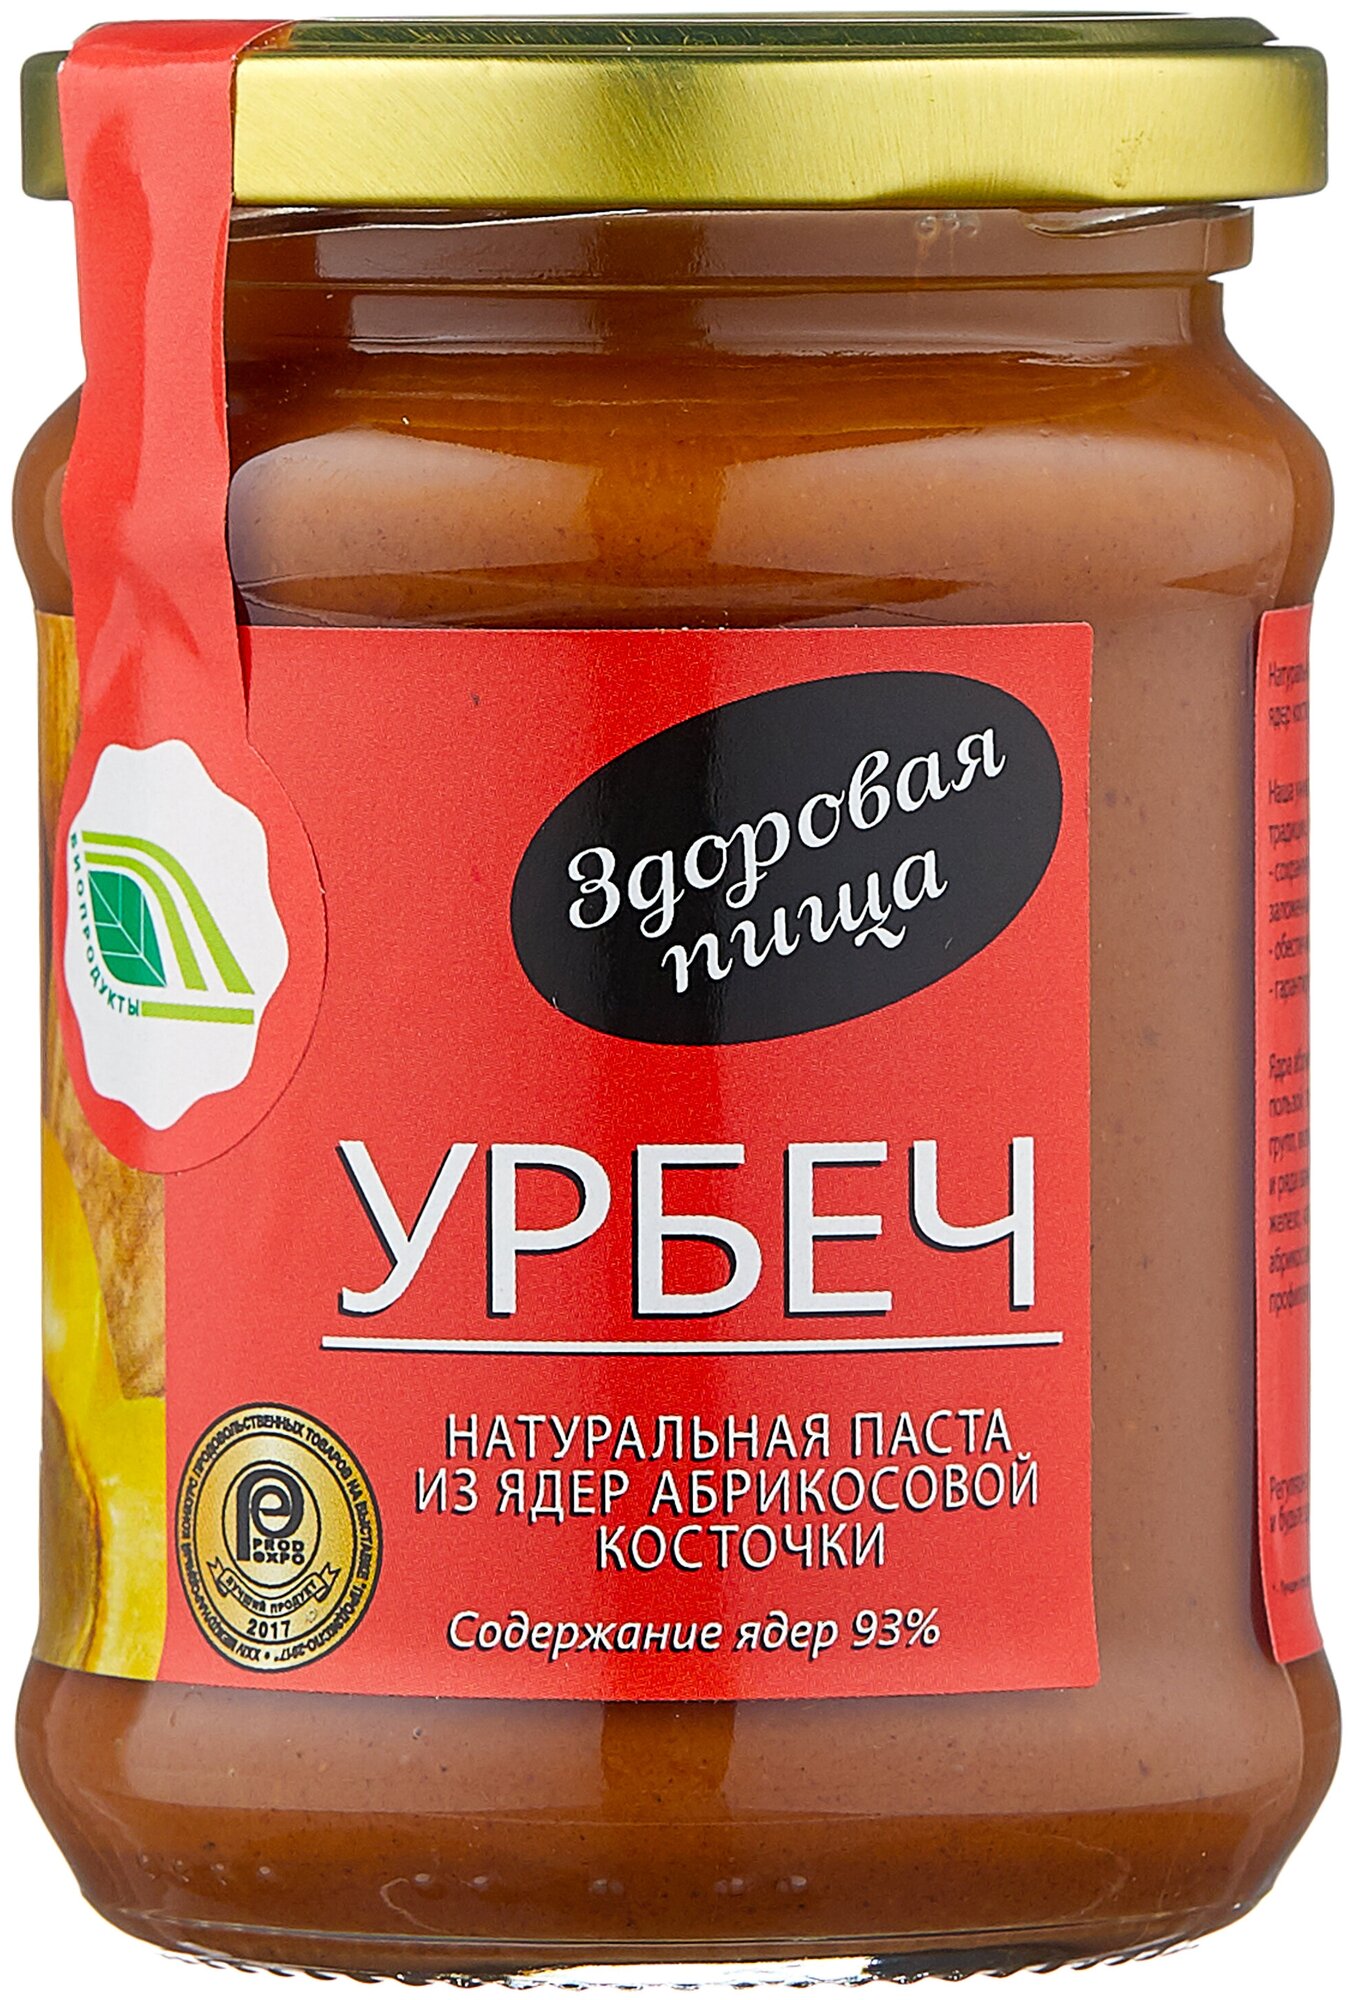 Натуральная паста Урбеч из ядер абрикосовых косточек, 280 гр.